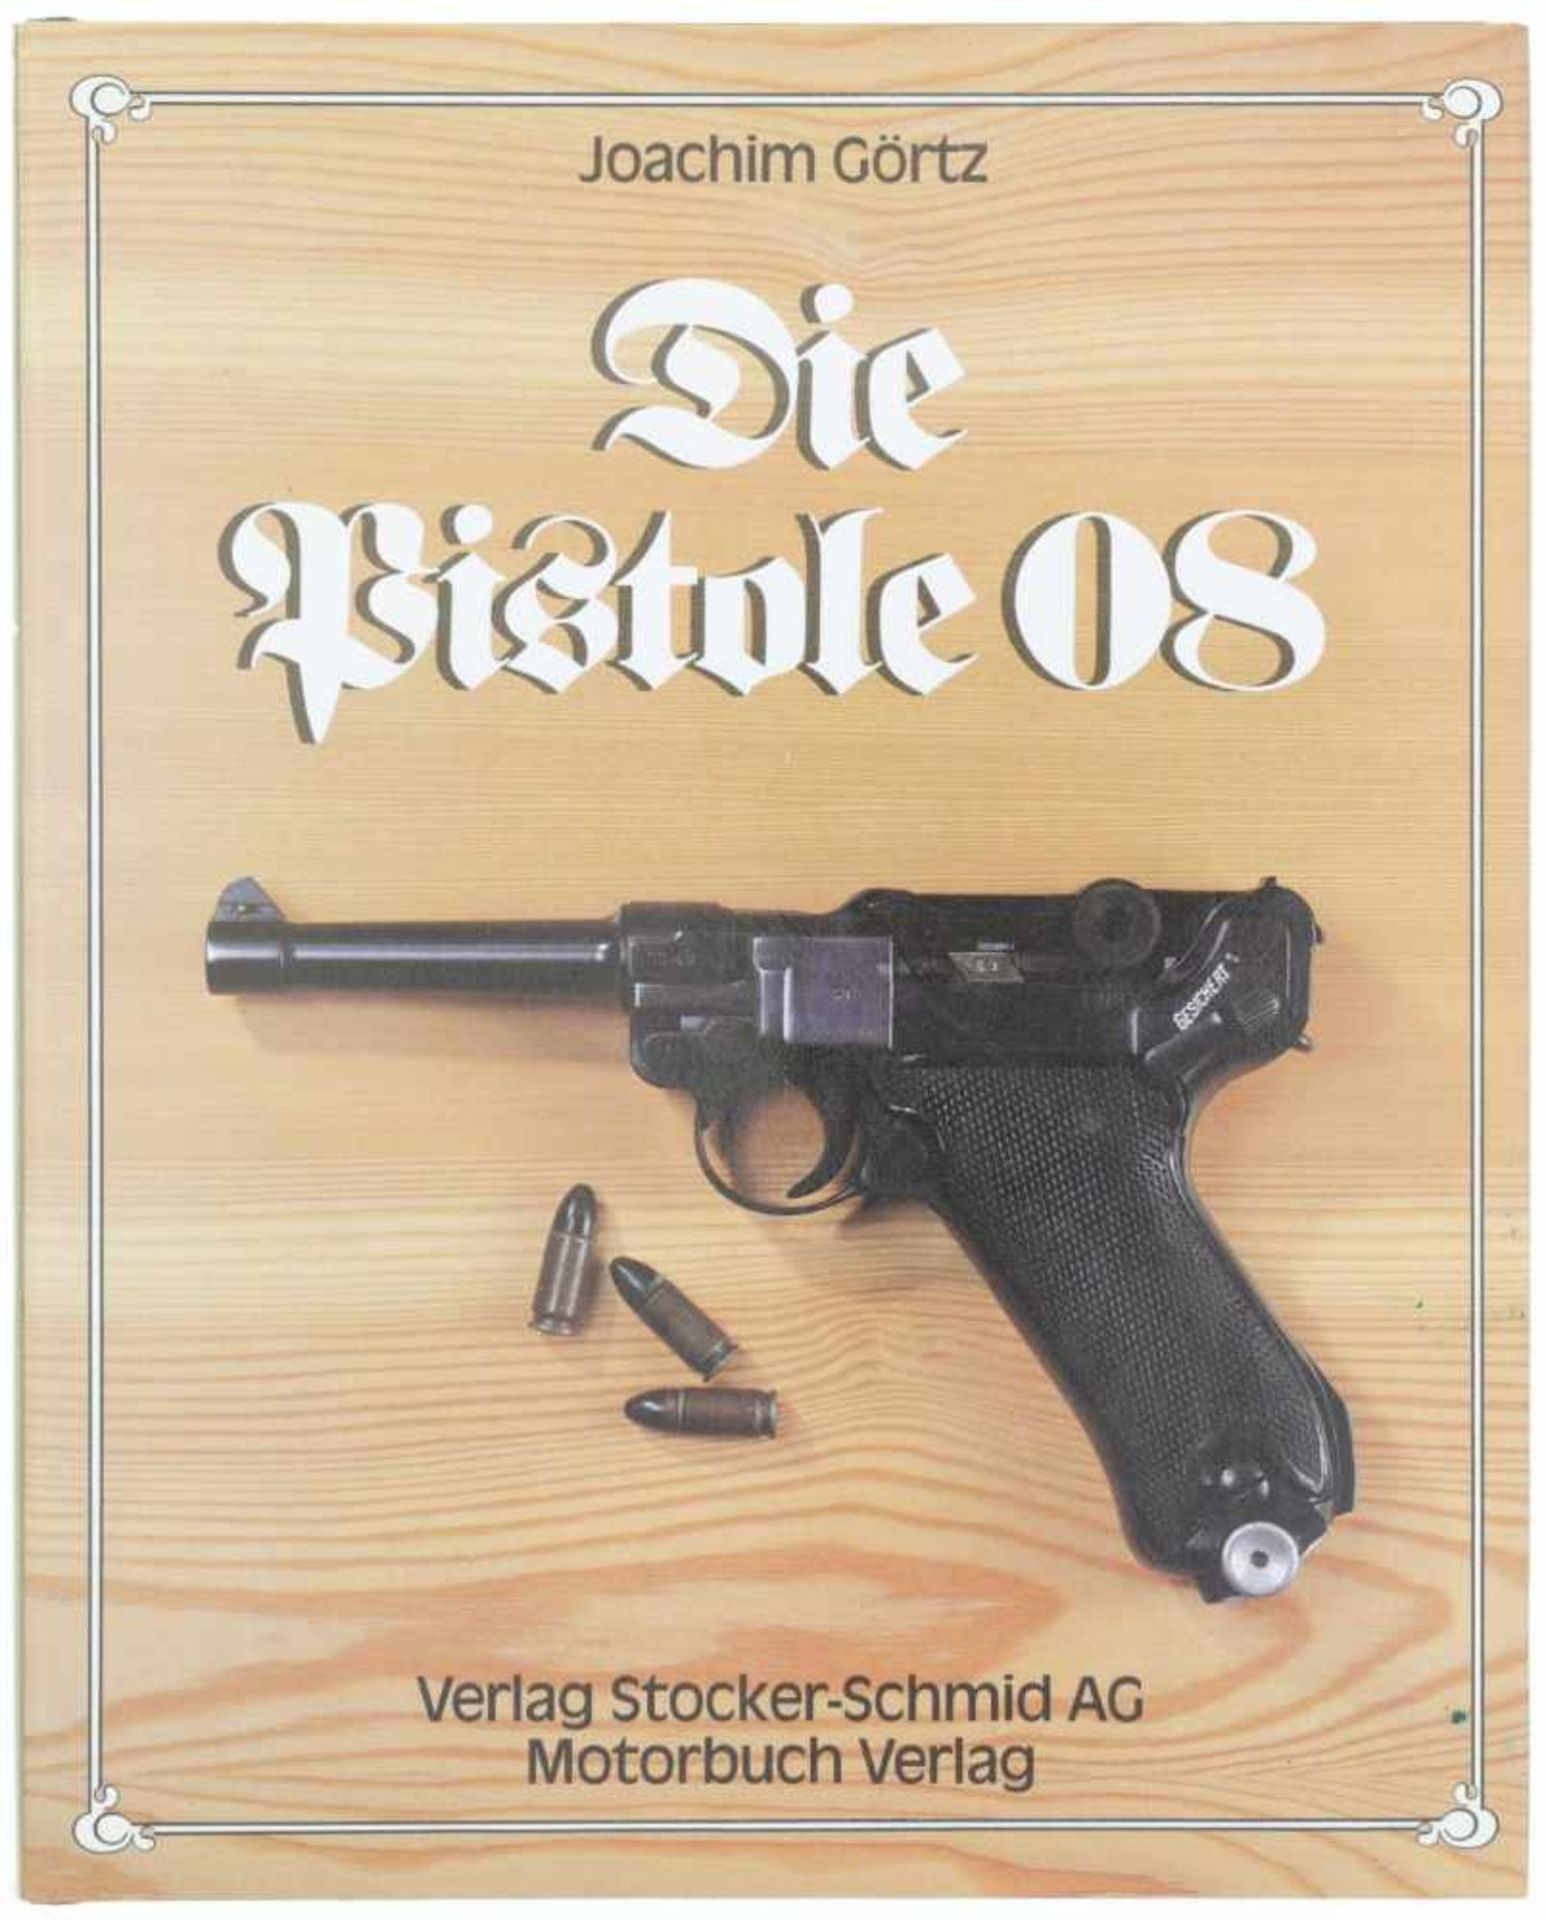 Die Pistole 08 Autor Joachim Görtz, Verlag Stocker-Schmid AG. Die spannende Geschichte der Pistole